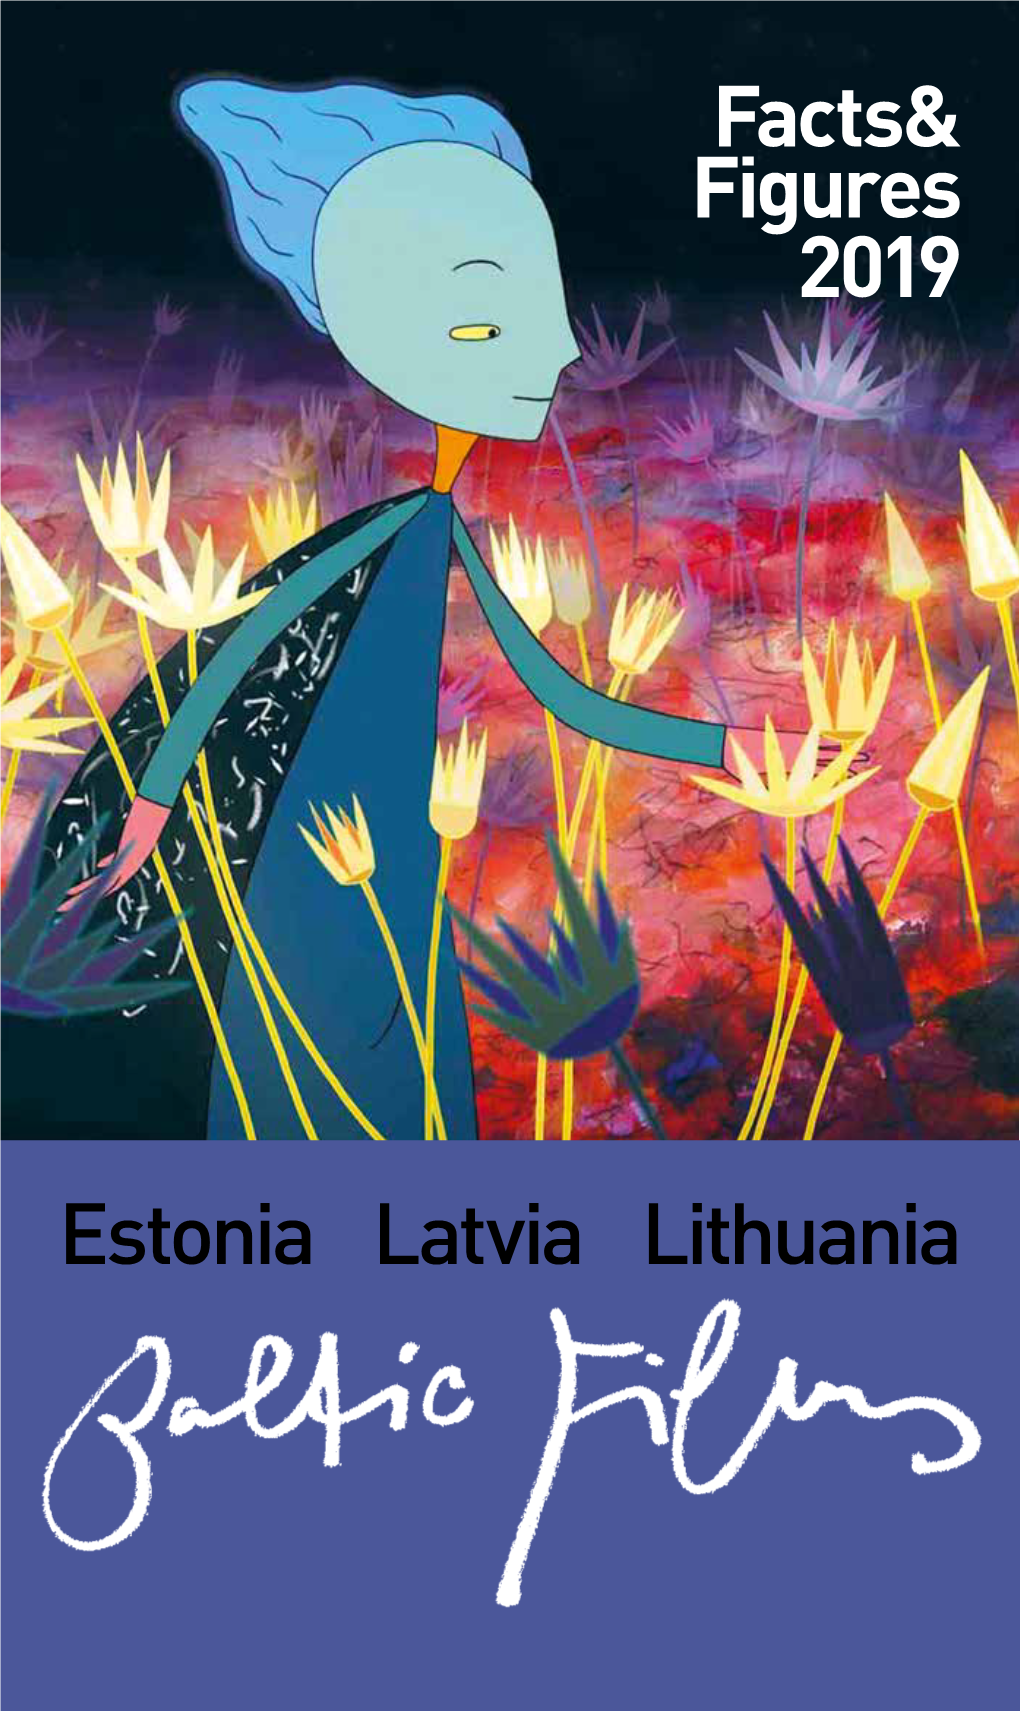 Facts& Figures 2019 Estonia Latvia Lithuania